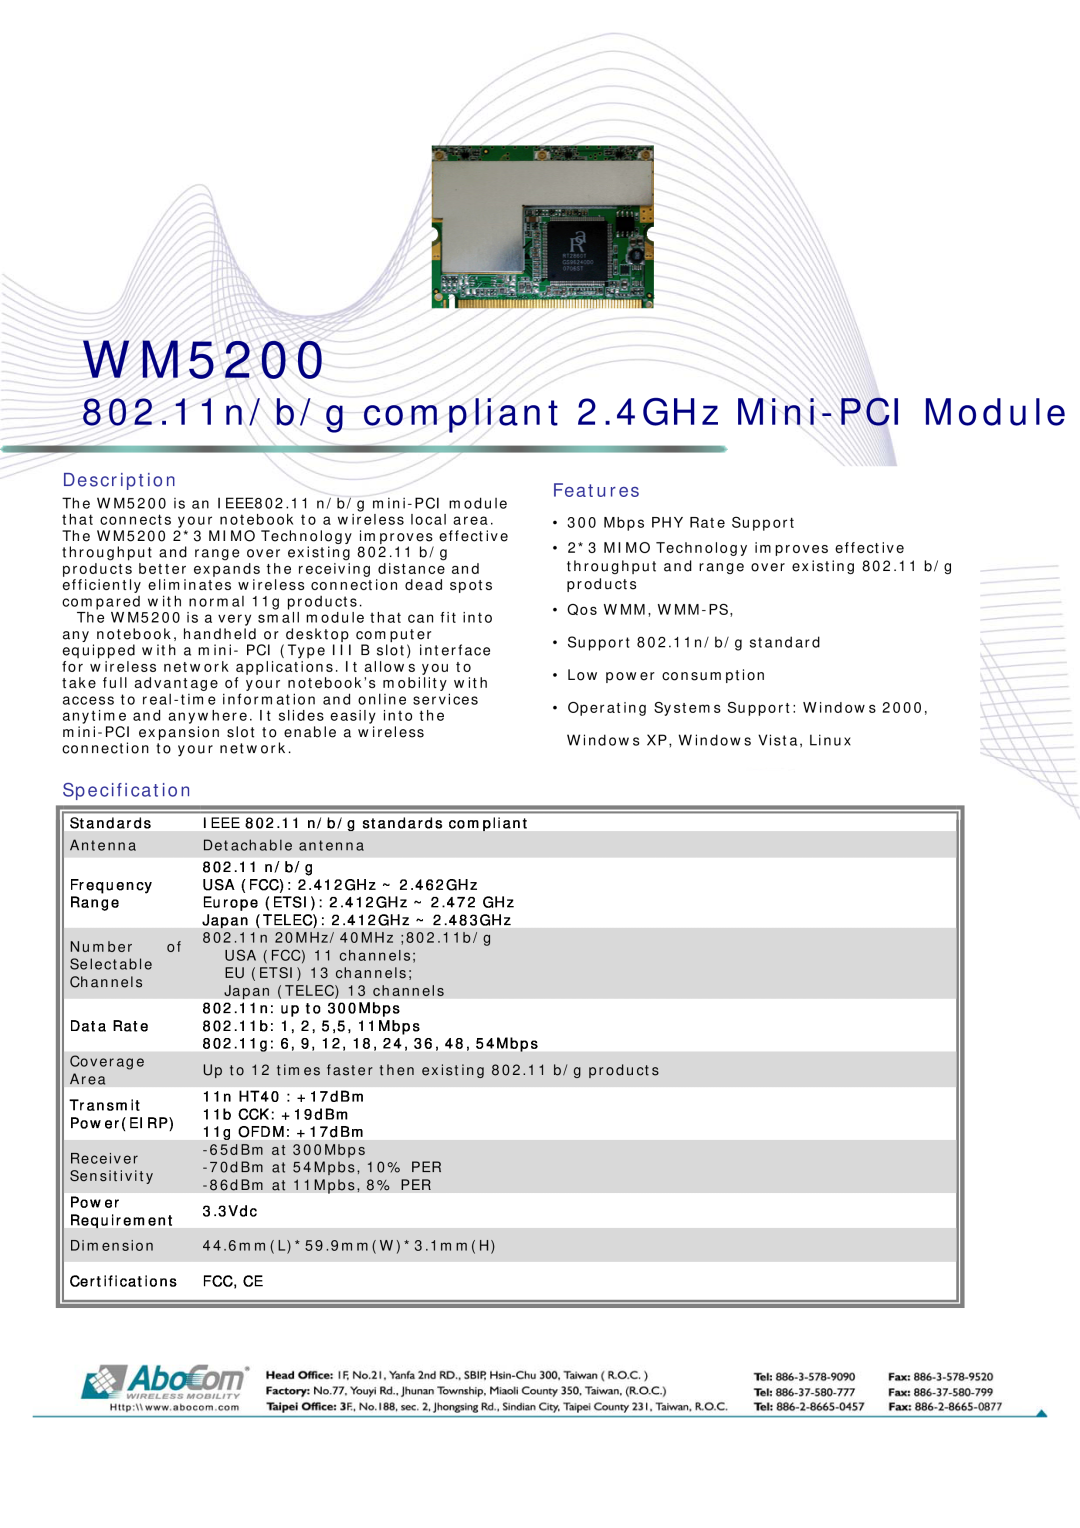 Abocom WM5200 specifications 802.11n/b/g compliant 2.4GHz Mini-PCI Module, Description, Features, Specification 